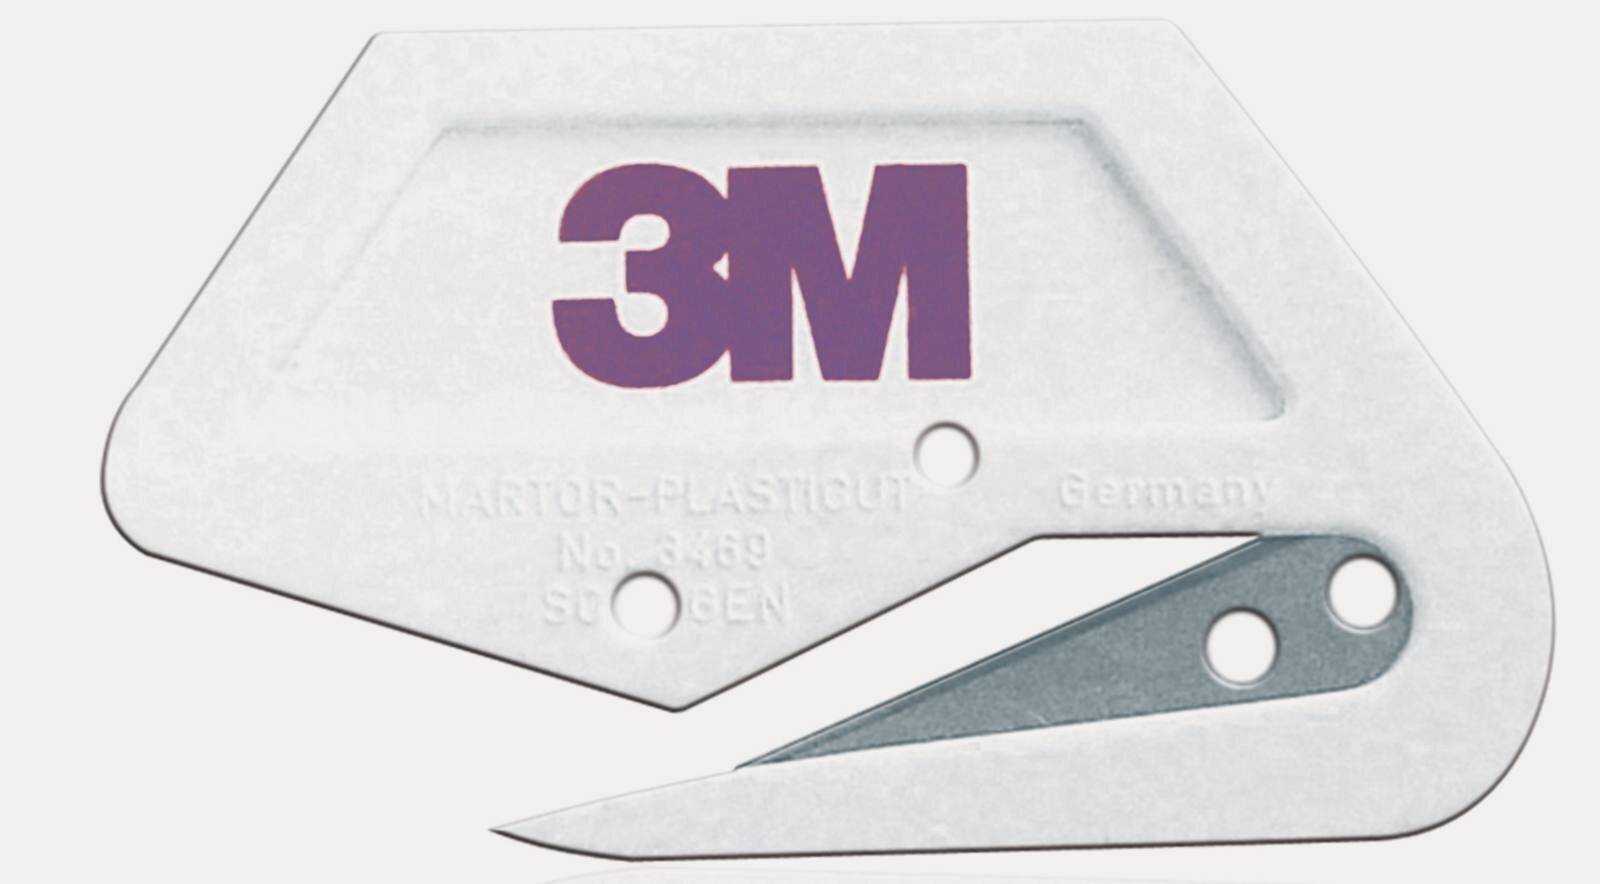 coltello 3M per pellicola di mascheratura Premium, bianco